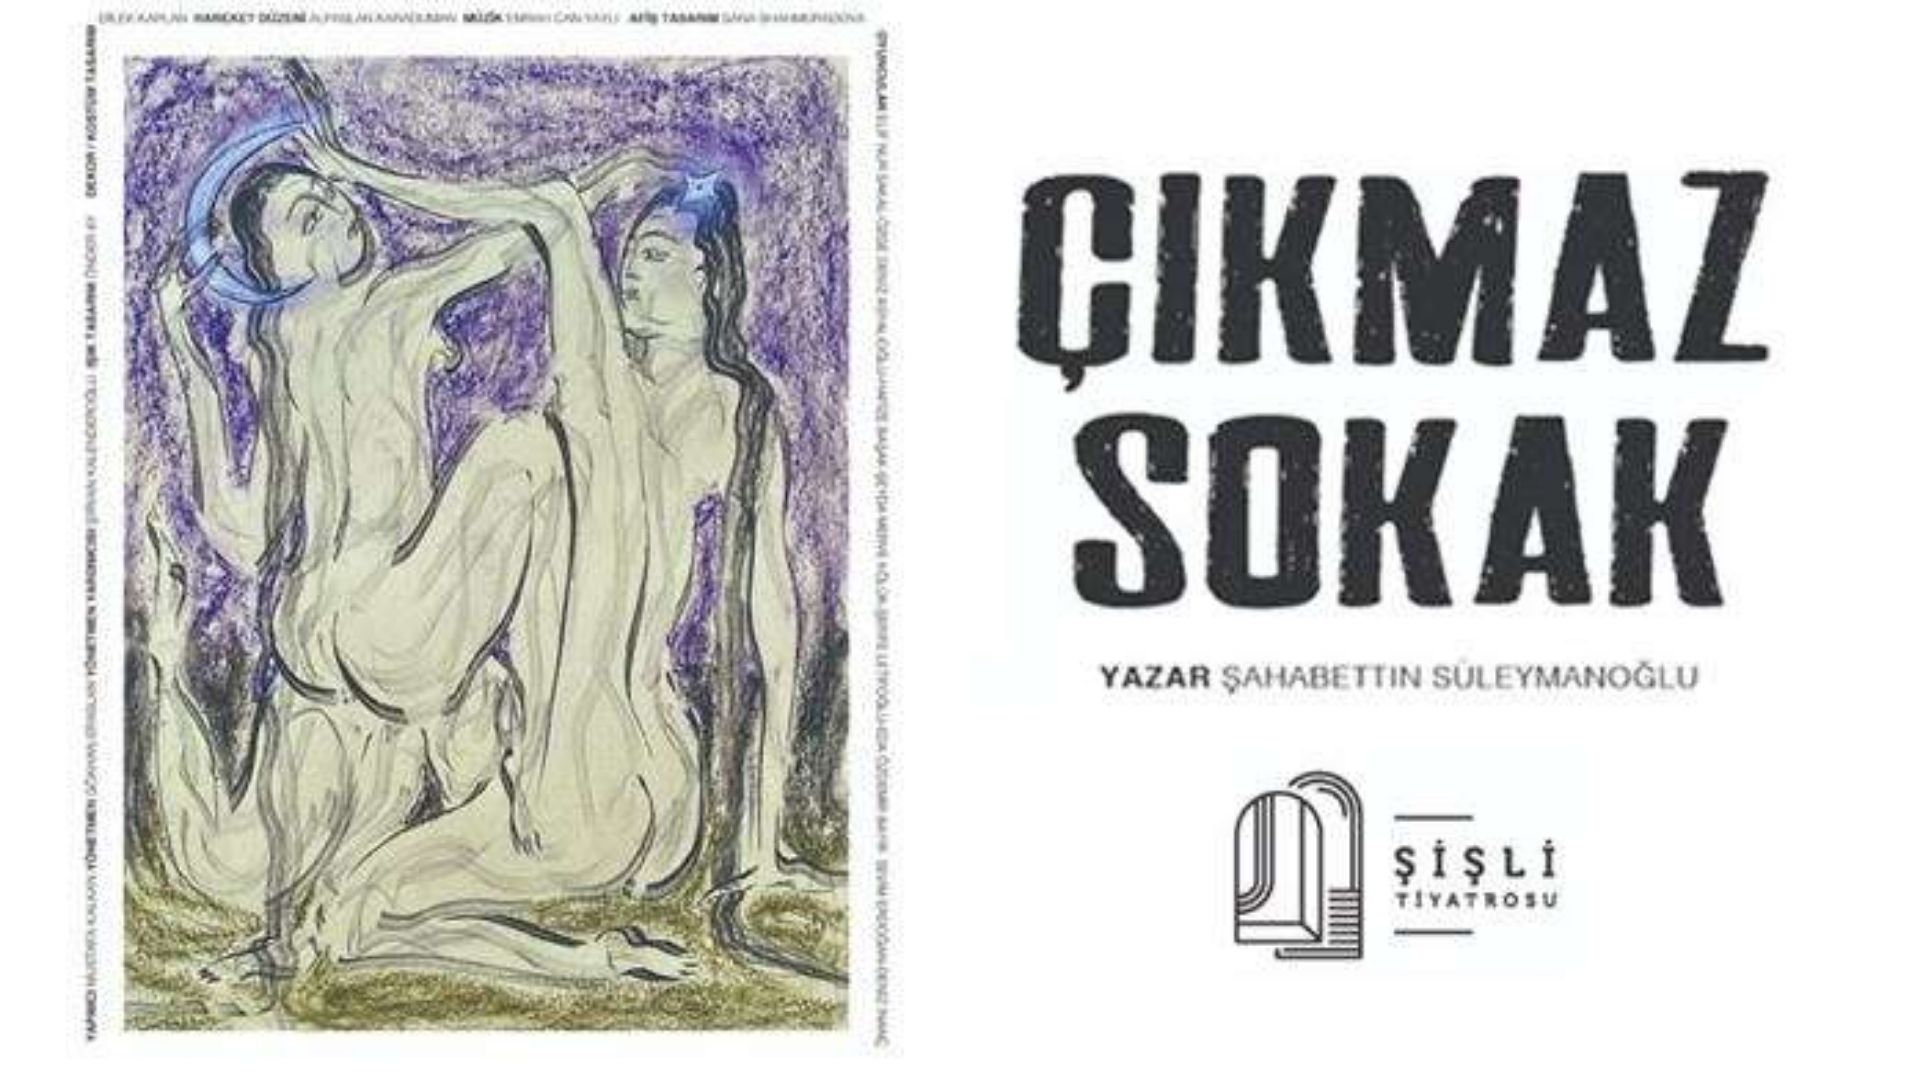 cikmaz sokak istanbul'da konser ve tiyatro oyunlari